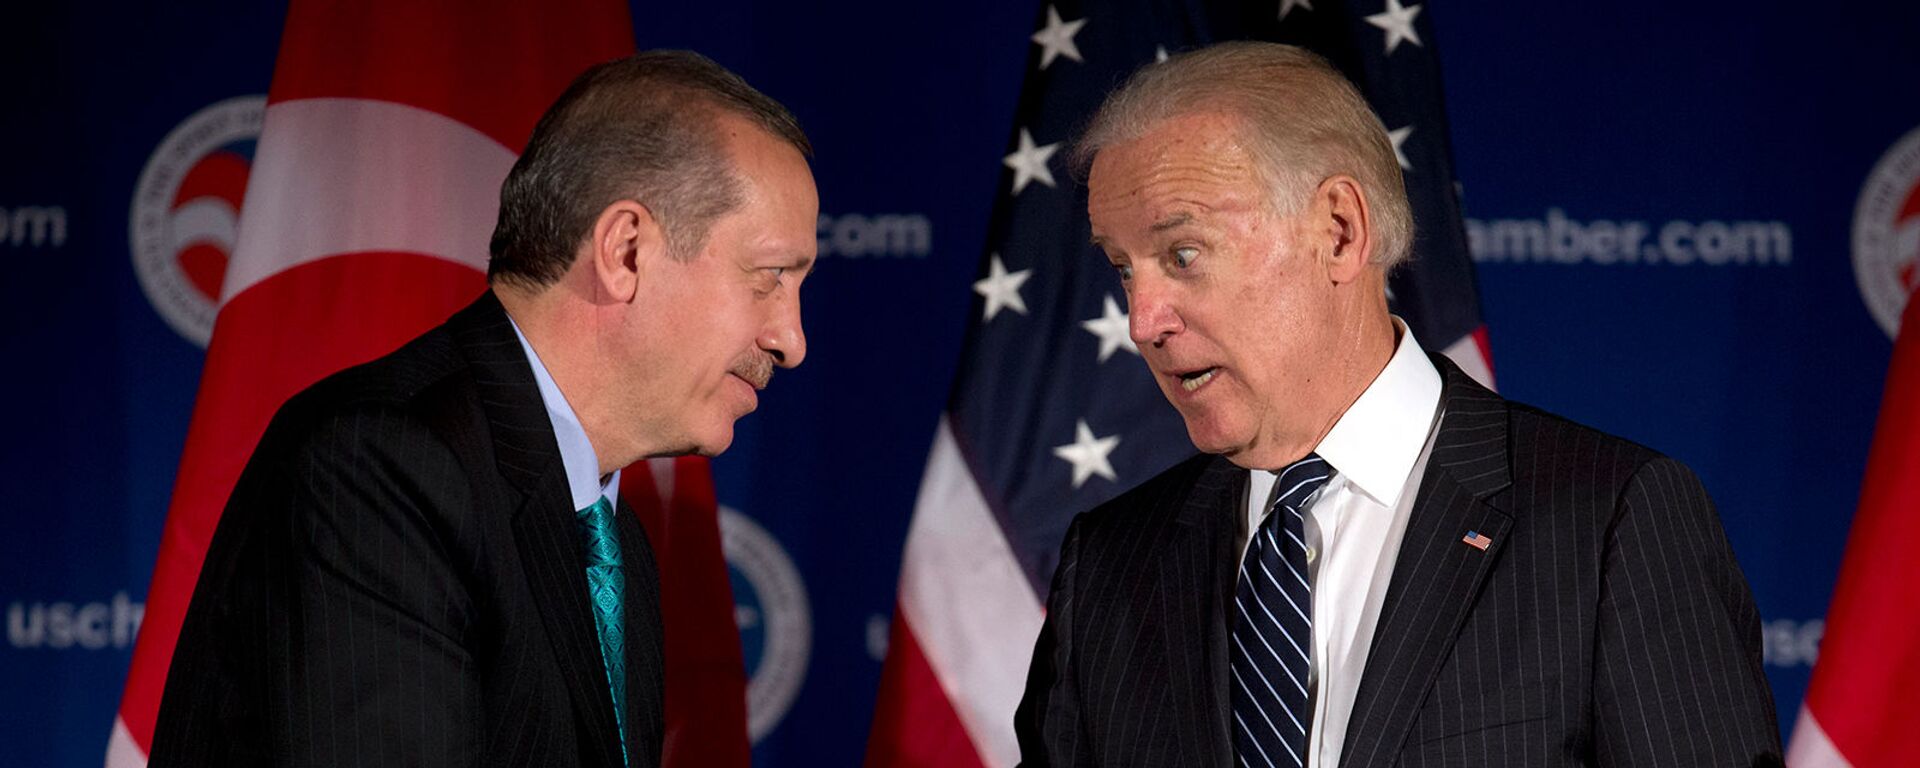 Вице-президент США Джо Байден и премьер-министр Турции Реджеп Тайип Эрдоган приветствуют друг друга во время круглого стола, организованного Торговой палатой США (16 мая 2013). Вашингтон - Sputnik Армения, 1920, 27.04.2021